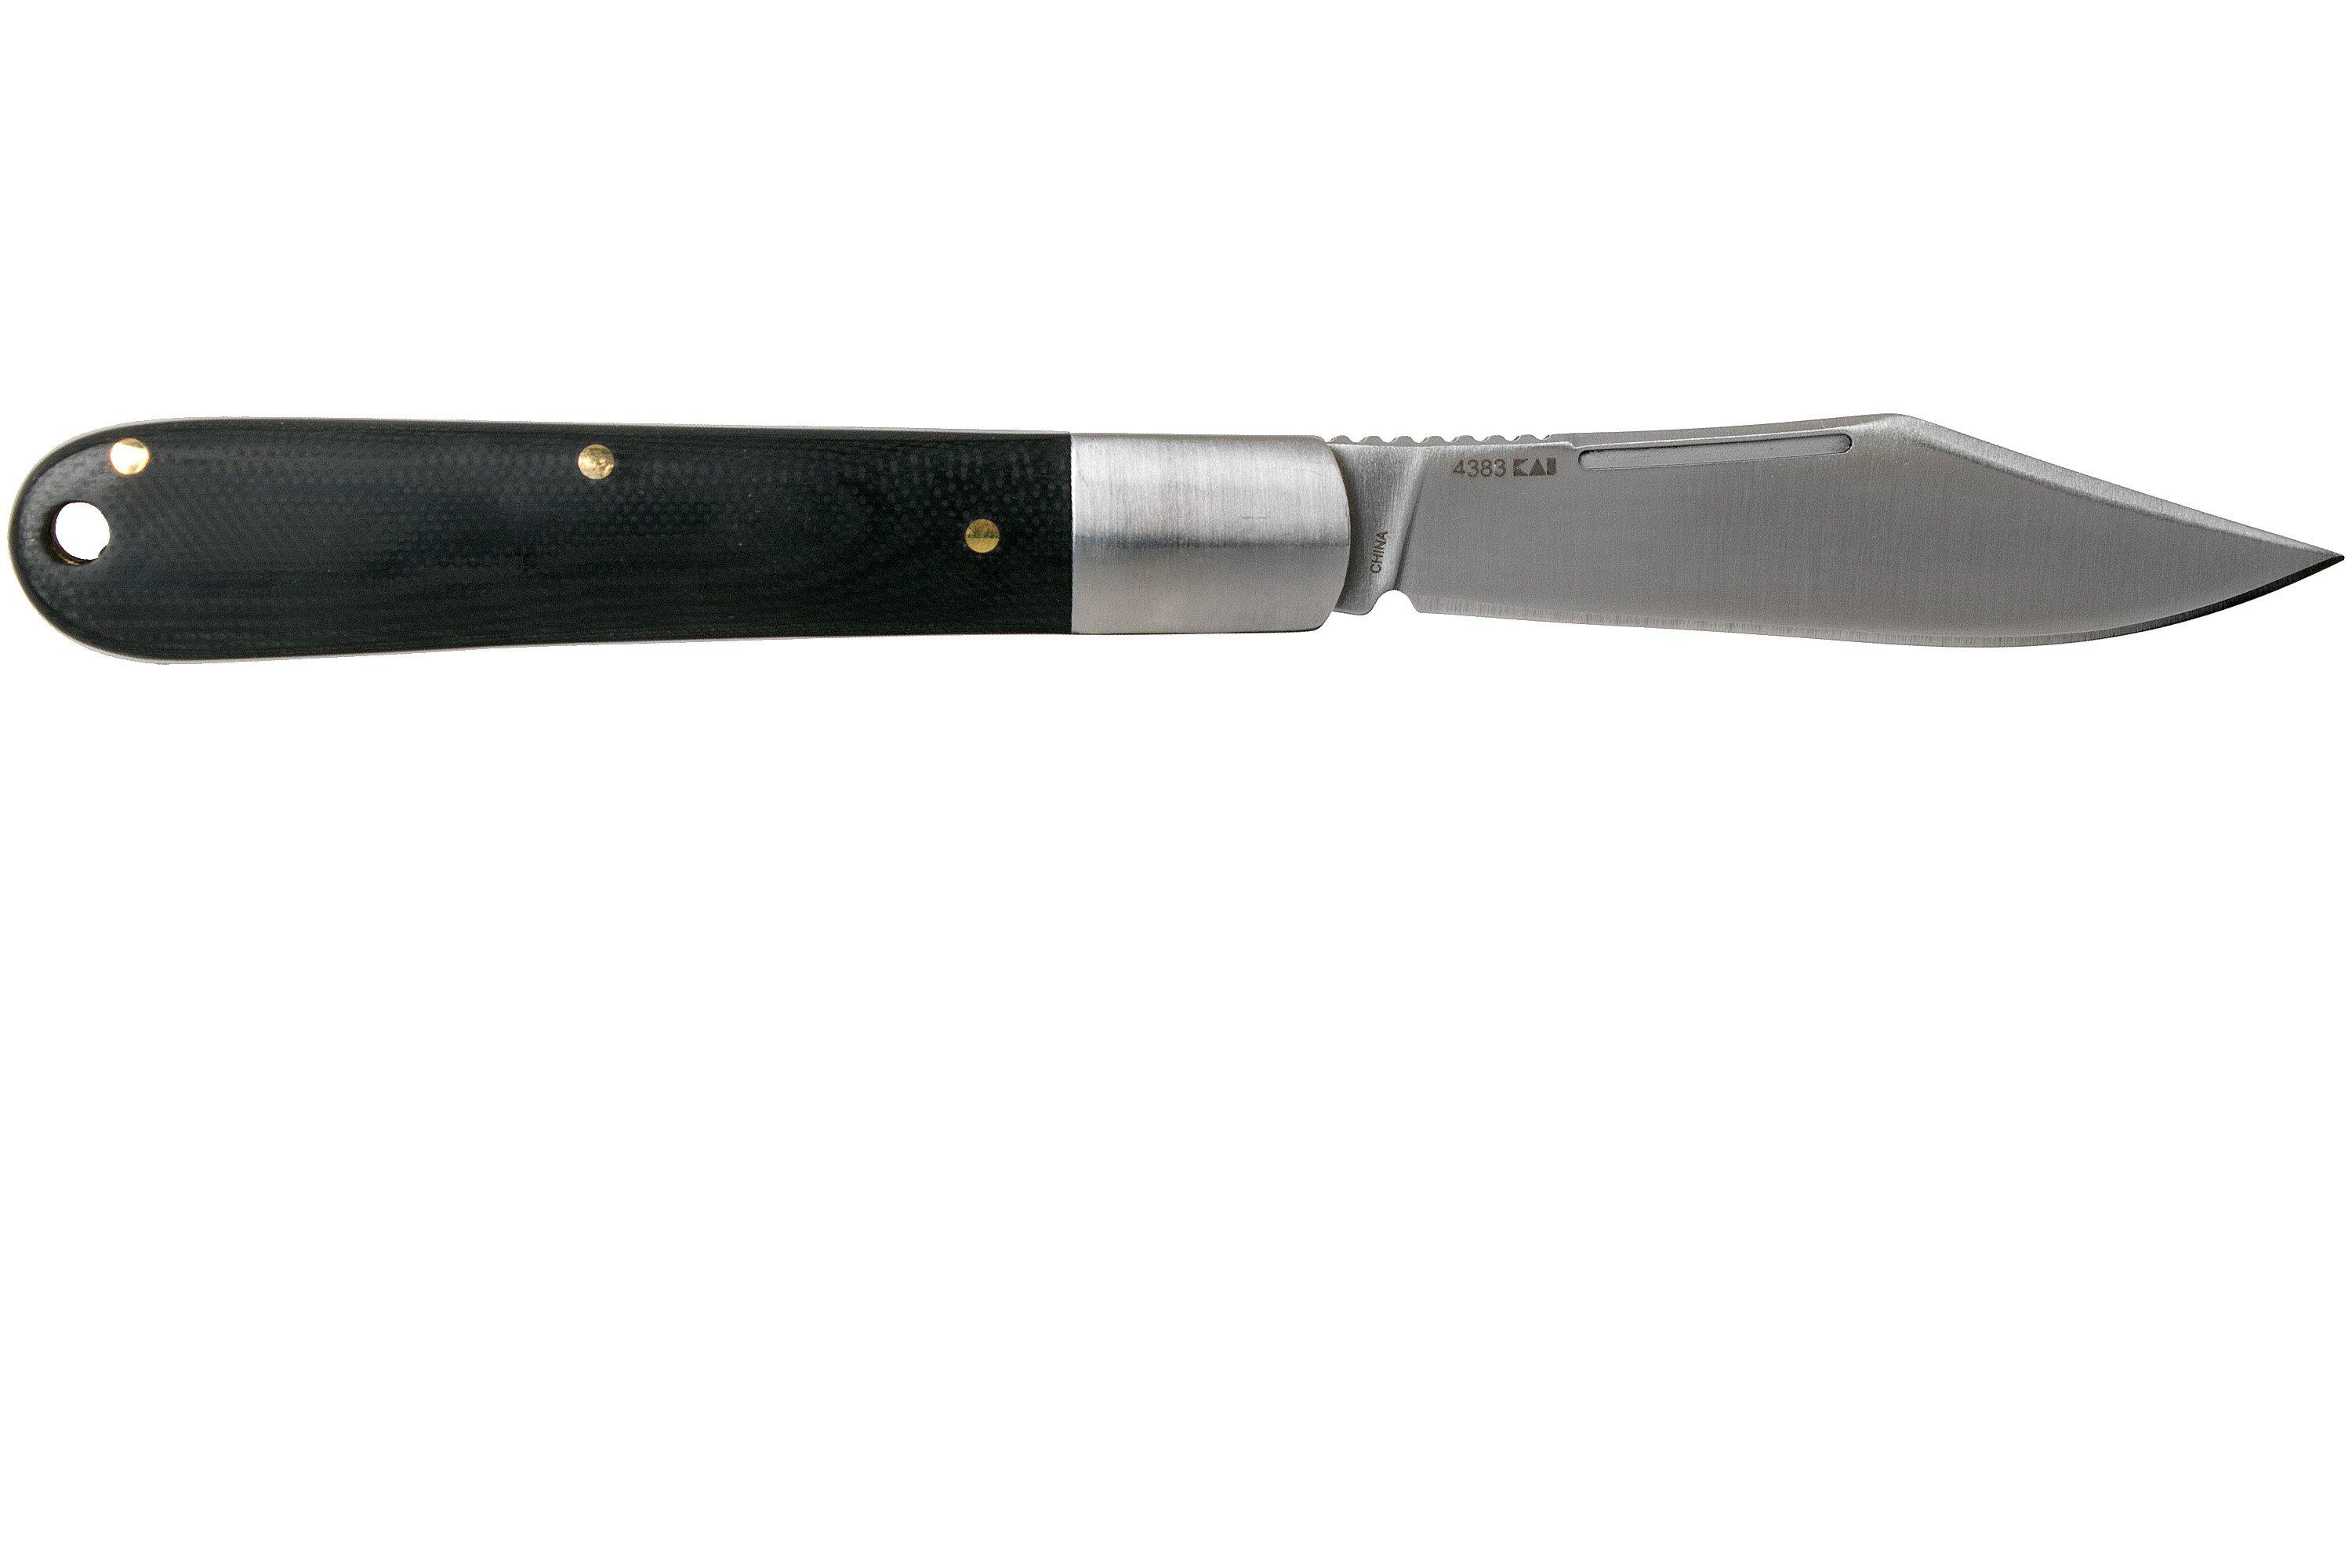 Kershaw Culpepper 4383 Barlow pocket knife | Advantageously shopping at ...